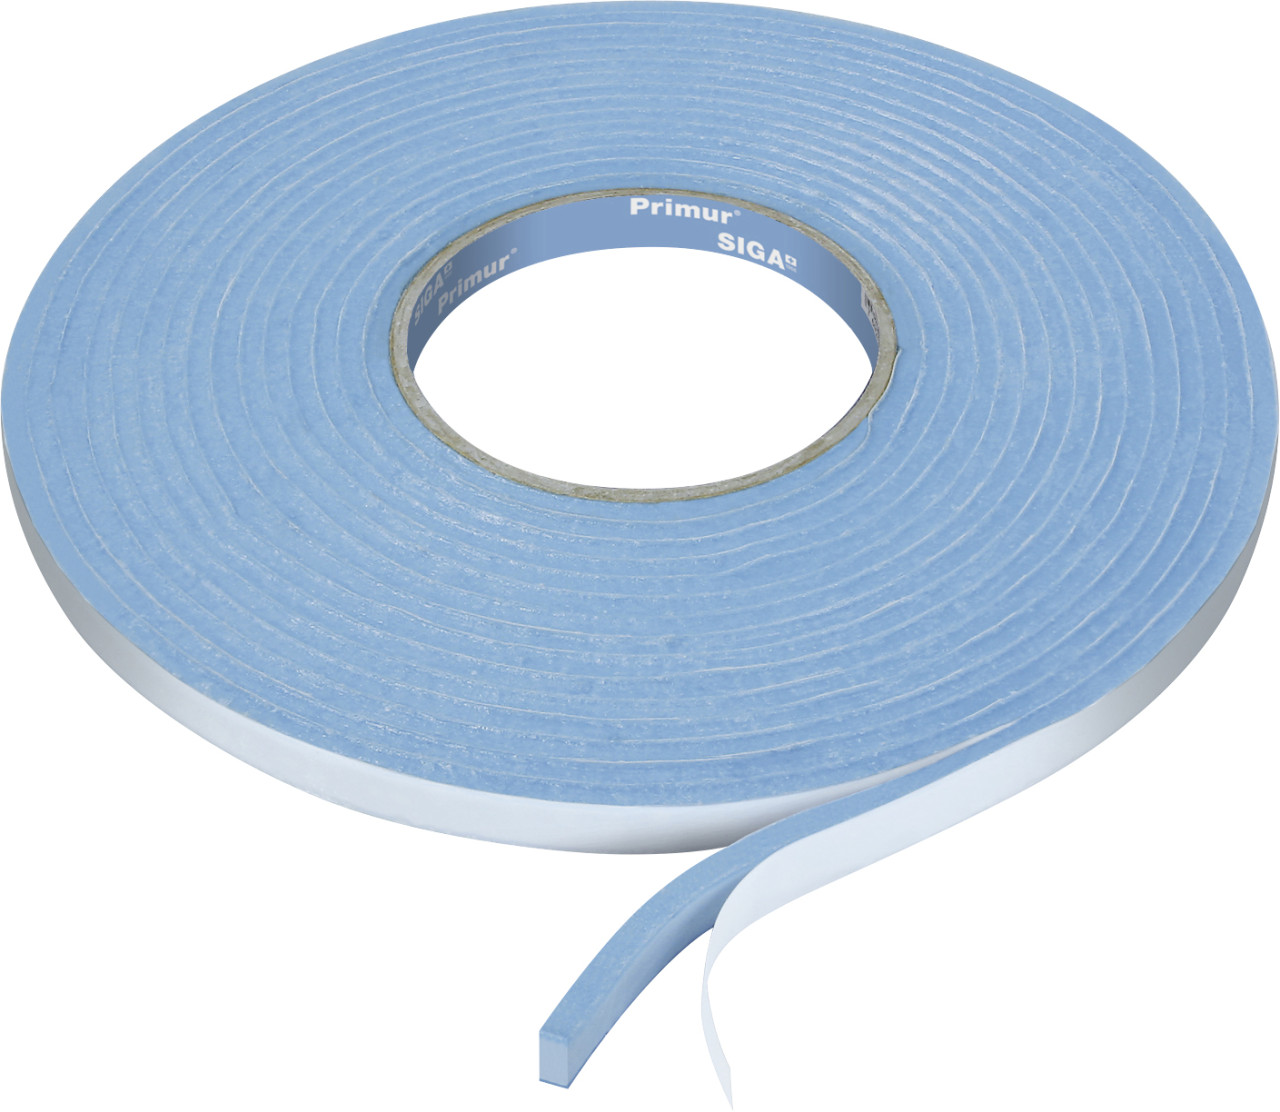 Siga Anschlussband Primur 8 m x 1,2 cm blau von Siga